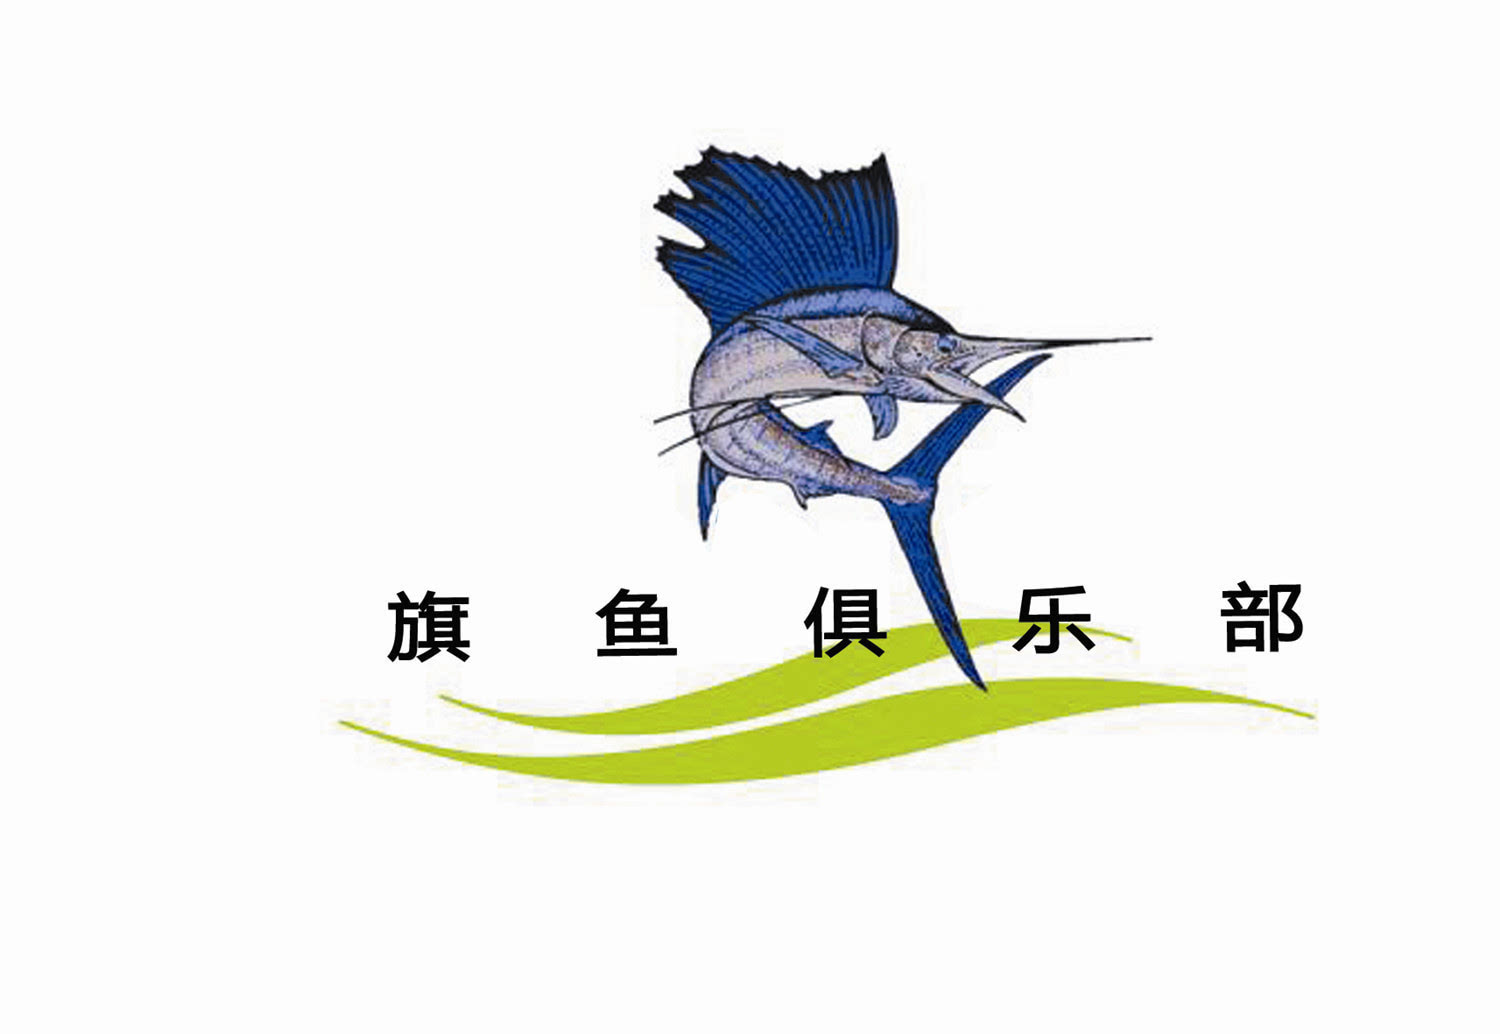 2015年7月24日下午,亚洲户外展联合南京旗鱼户外运动   如果你热爱